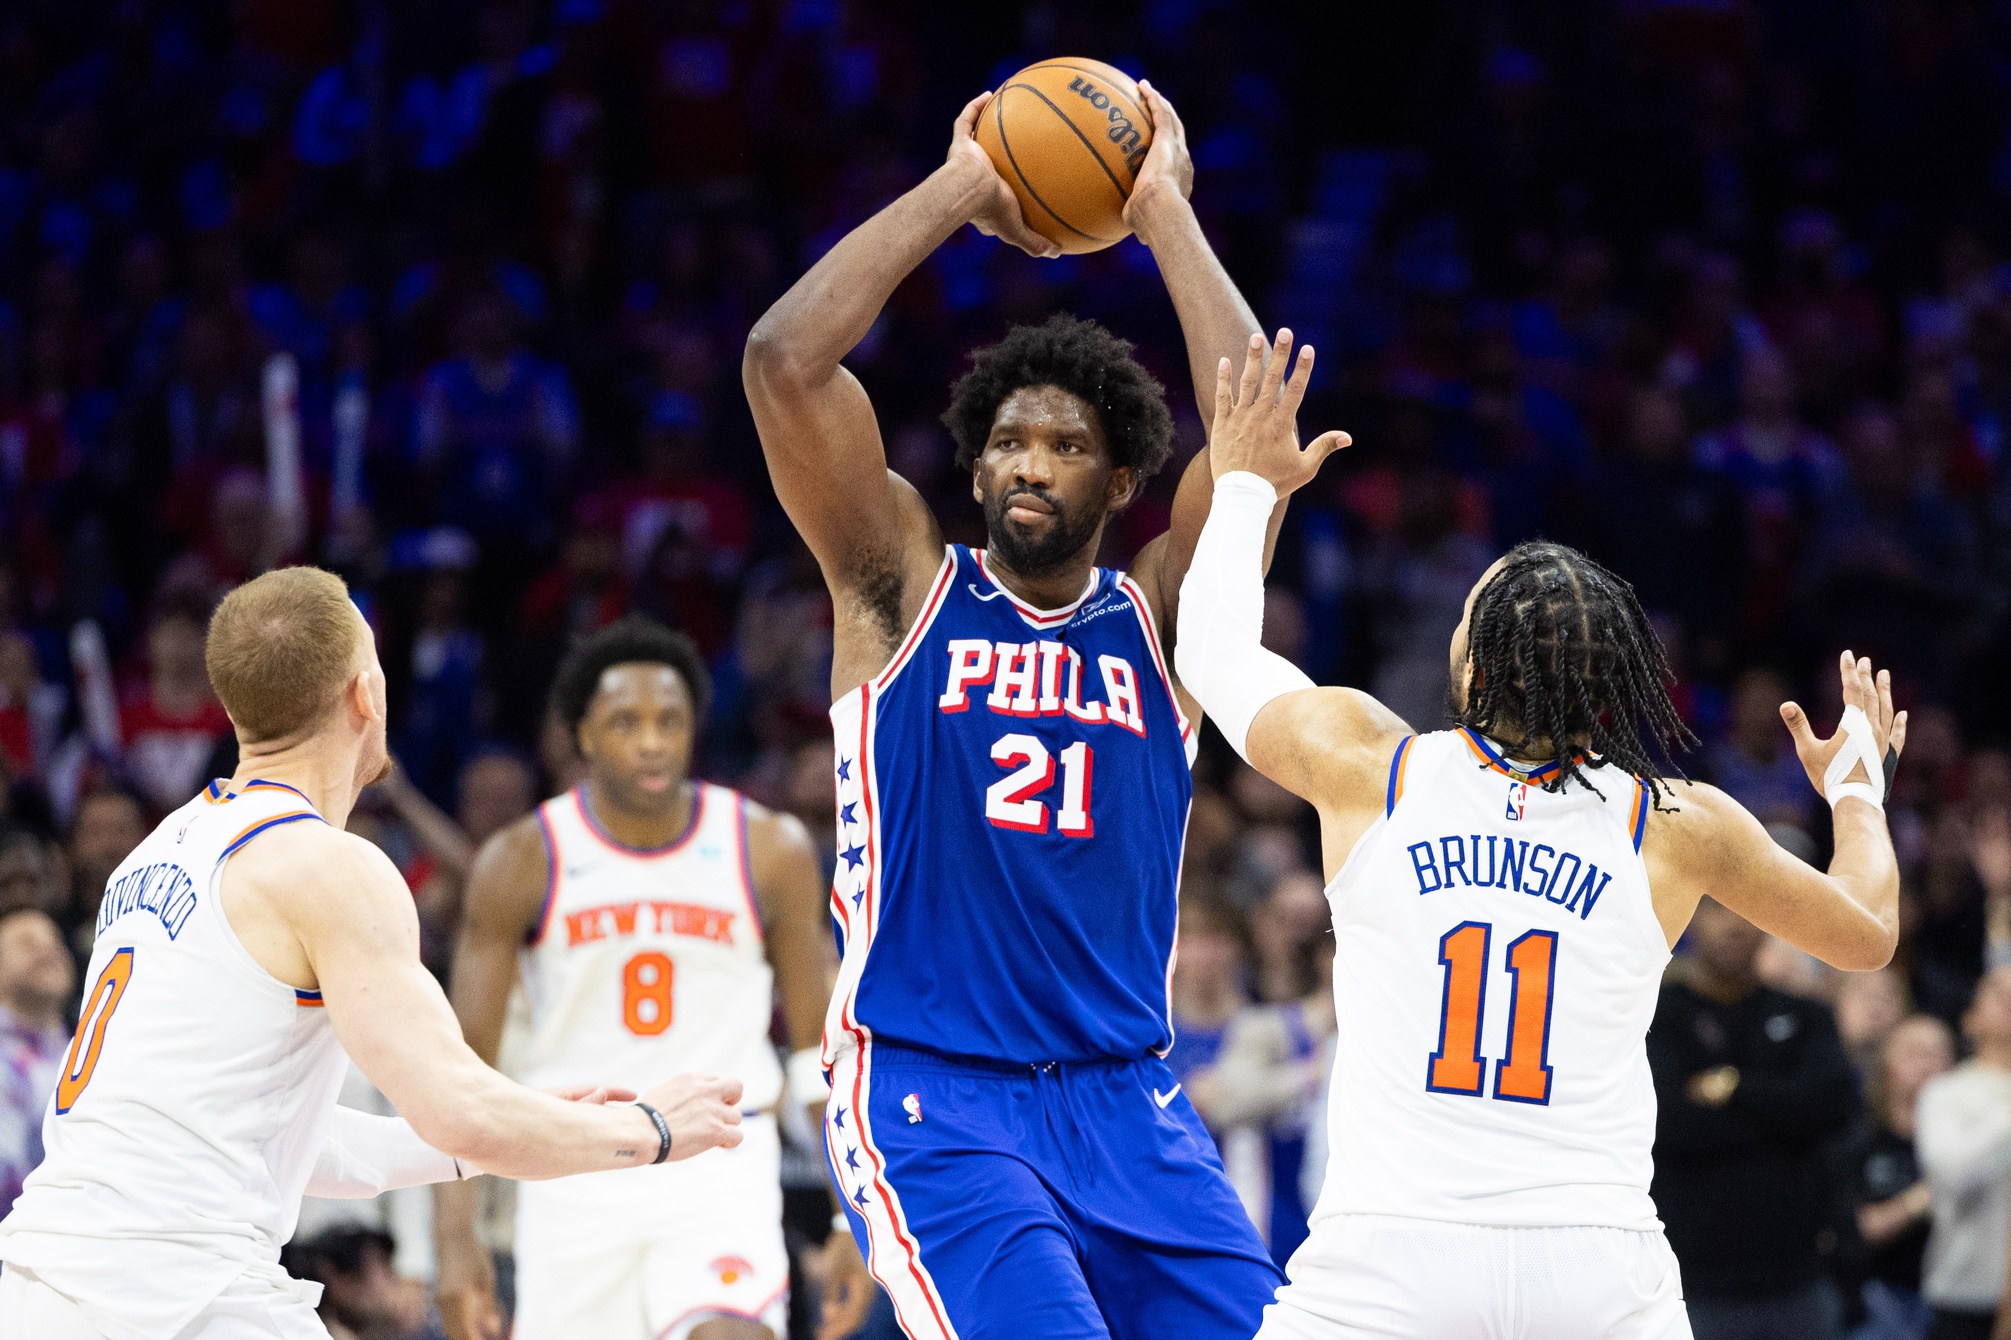 Knicks vs. 76ers Game 4 Preview: Philadelphia's Keys to Win